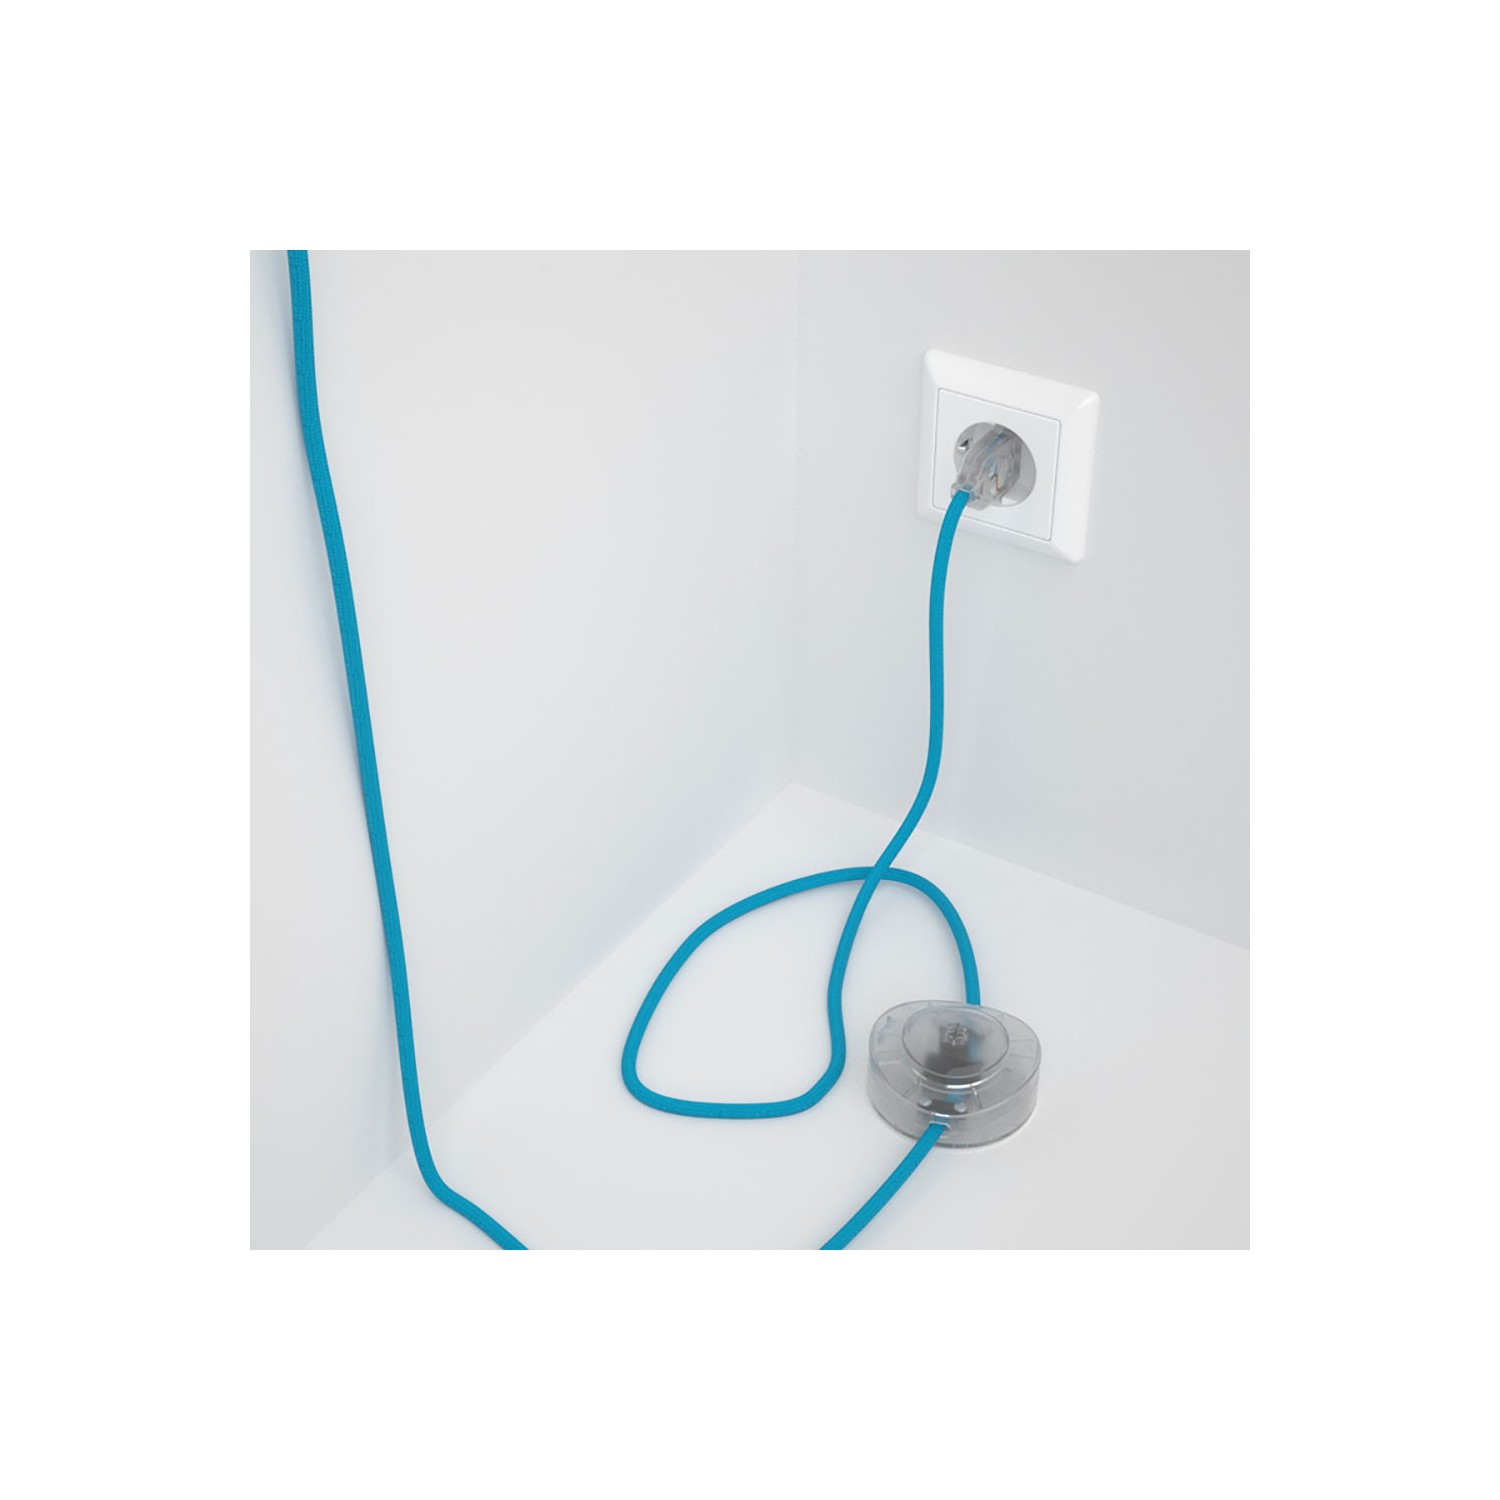 Cableado para lámpara de pie, cable RM11 Efecto Seda Celeste 3 m. Elige tu el color de la clavija y del interruptor!